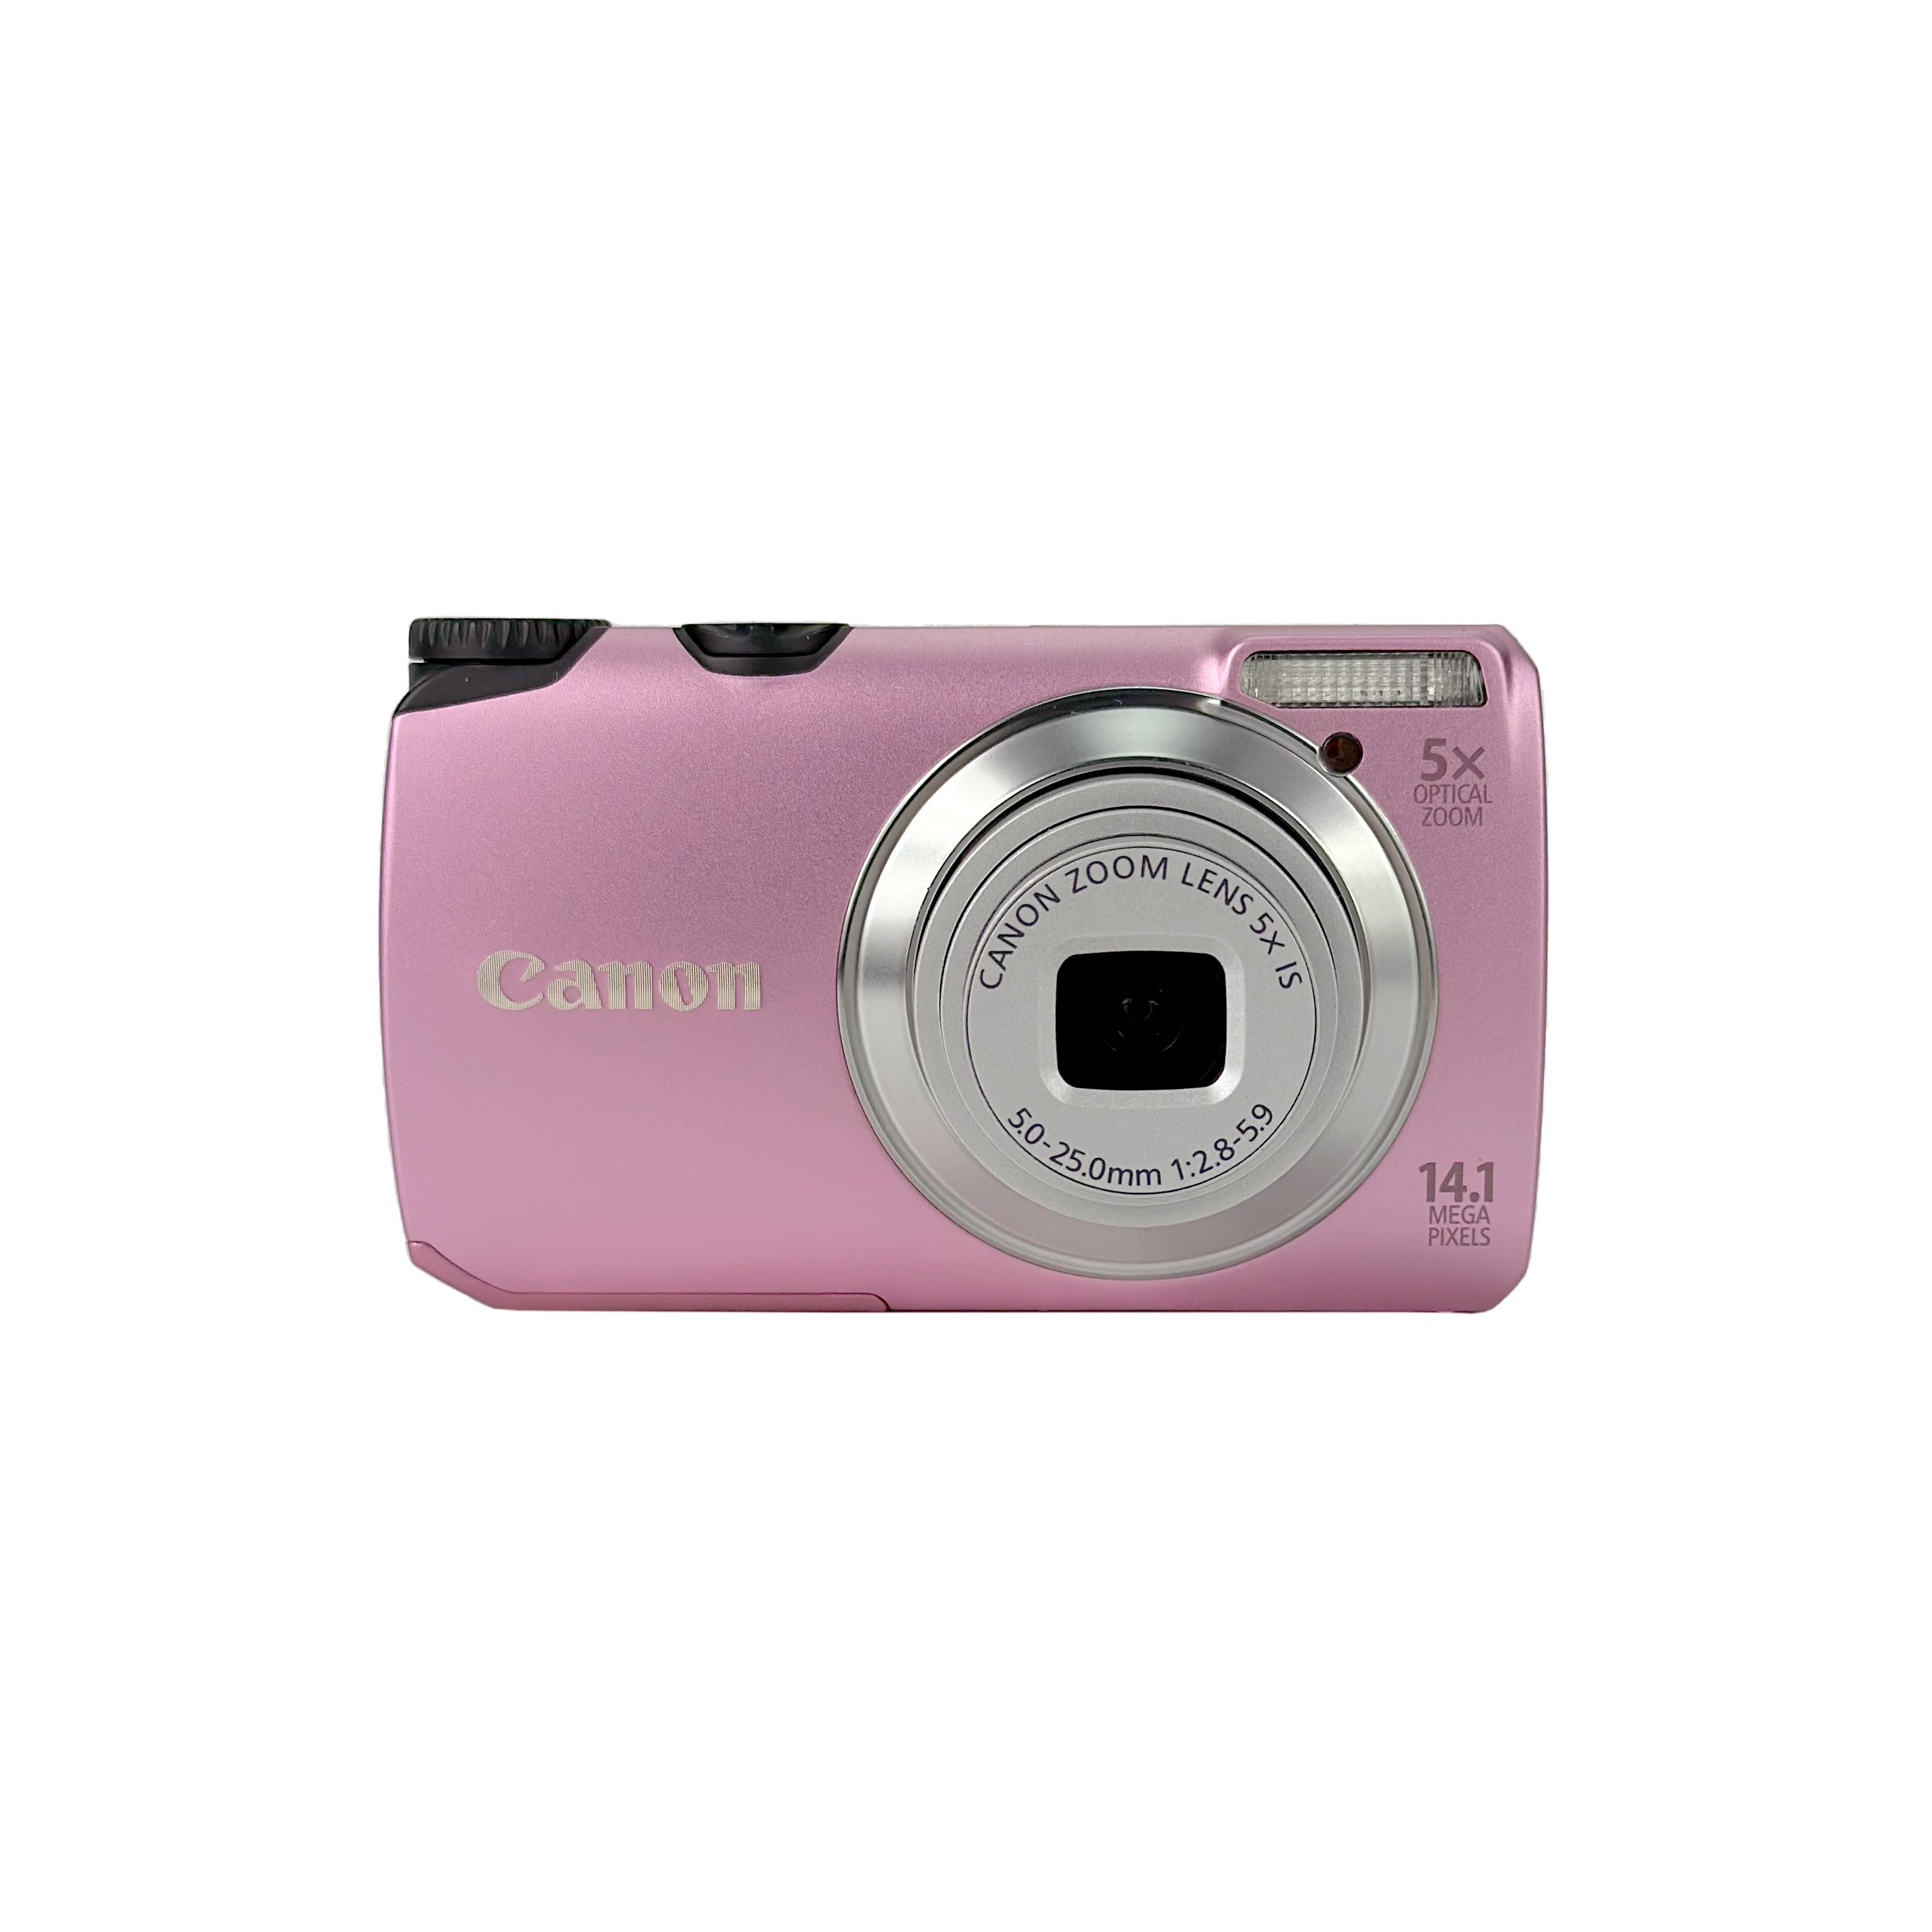 Canon デジタルカメラ PowerShot A3200 IS ピンク PSA3200IS(PK) wgteh8f-